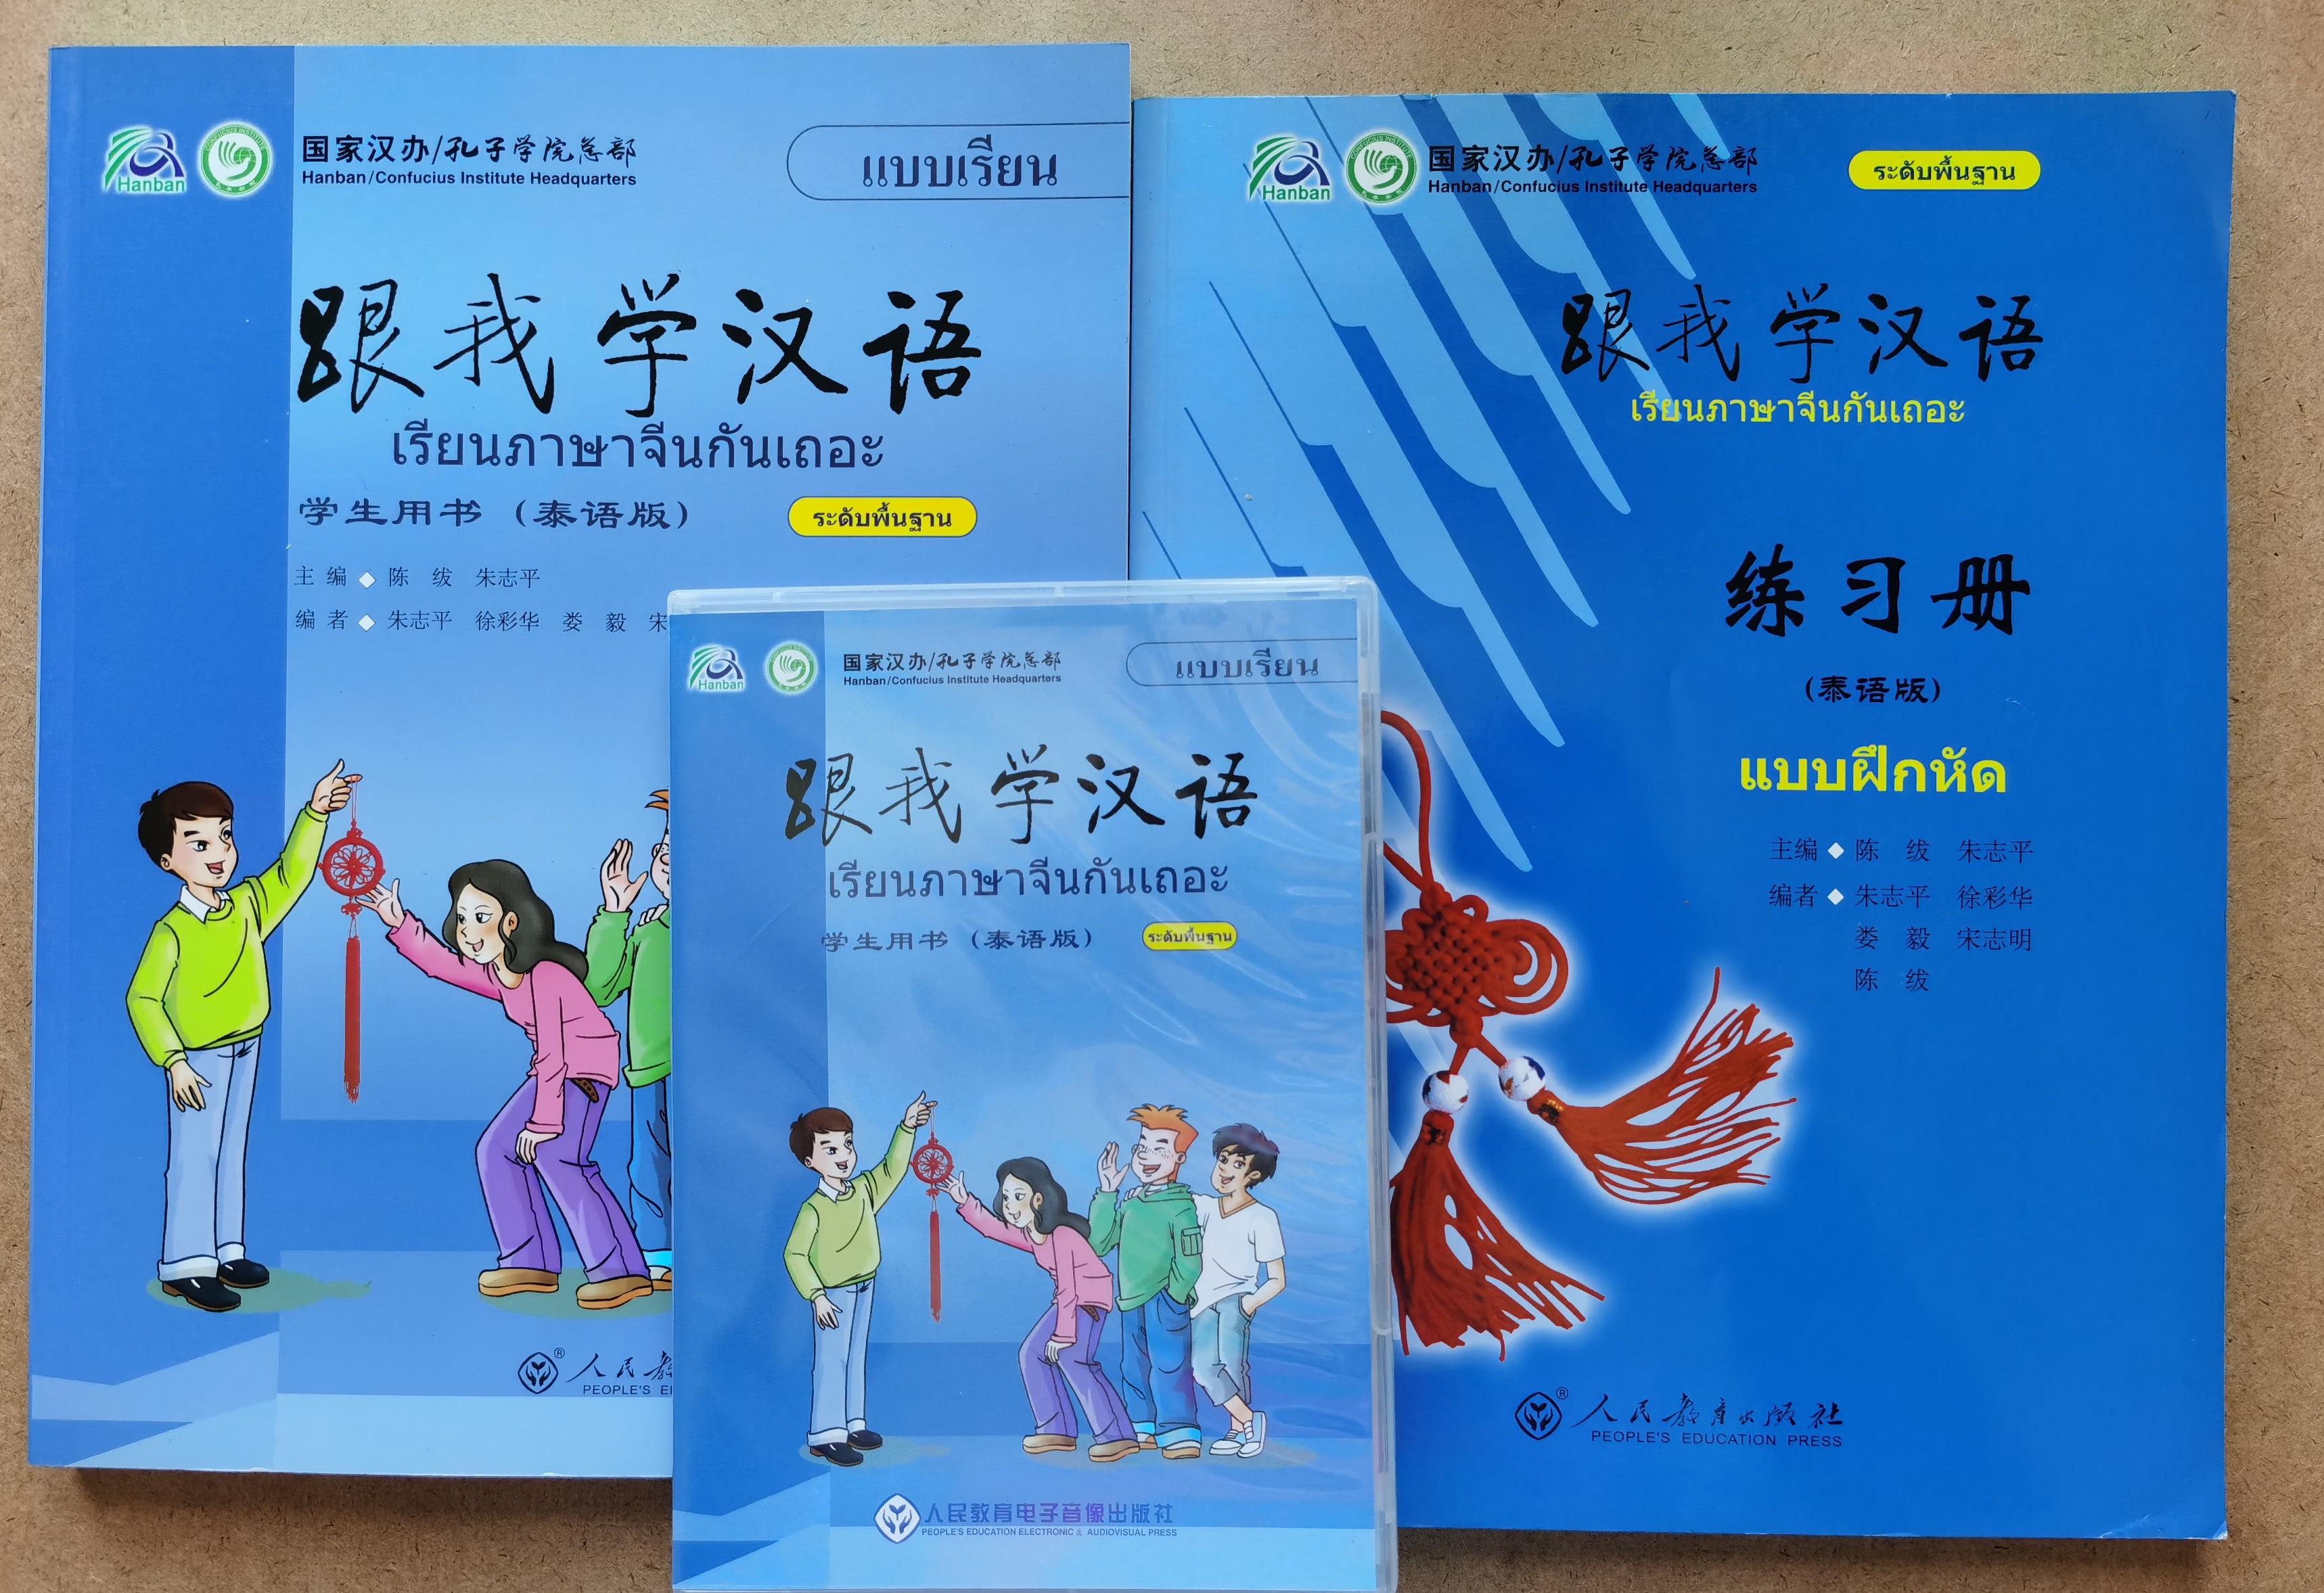 แบบเรียนภาษาจีน 跟我学汉语เรียนภาษาจีนกันเถอะ   Learn Chinese with me /Textbook+workbook+CD